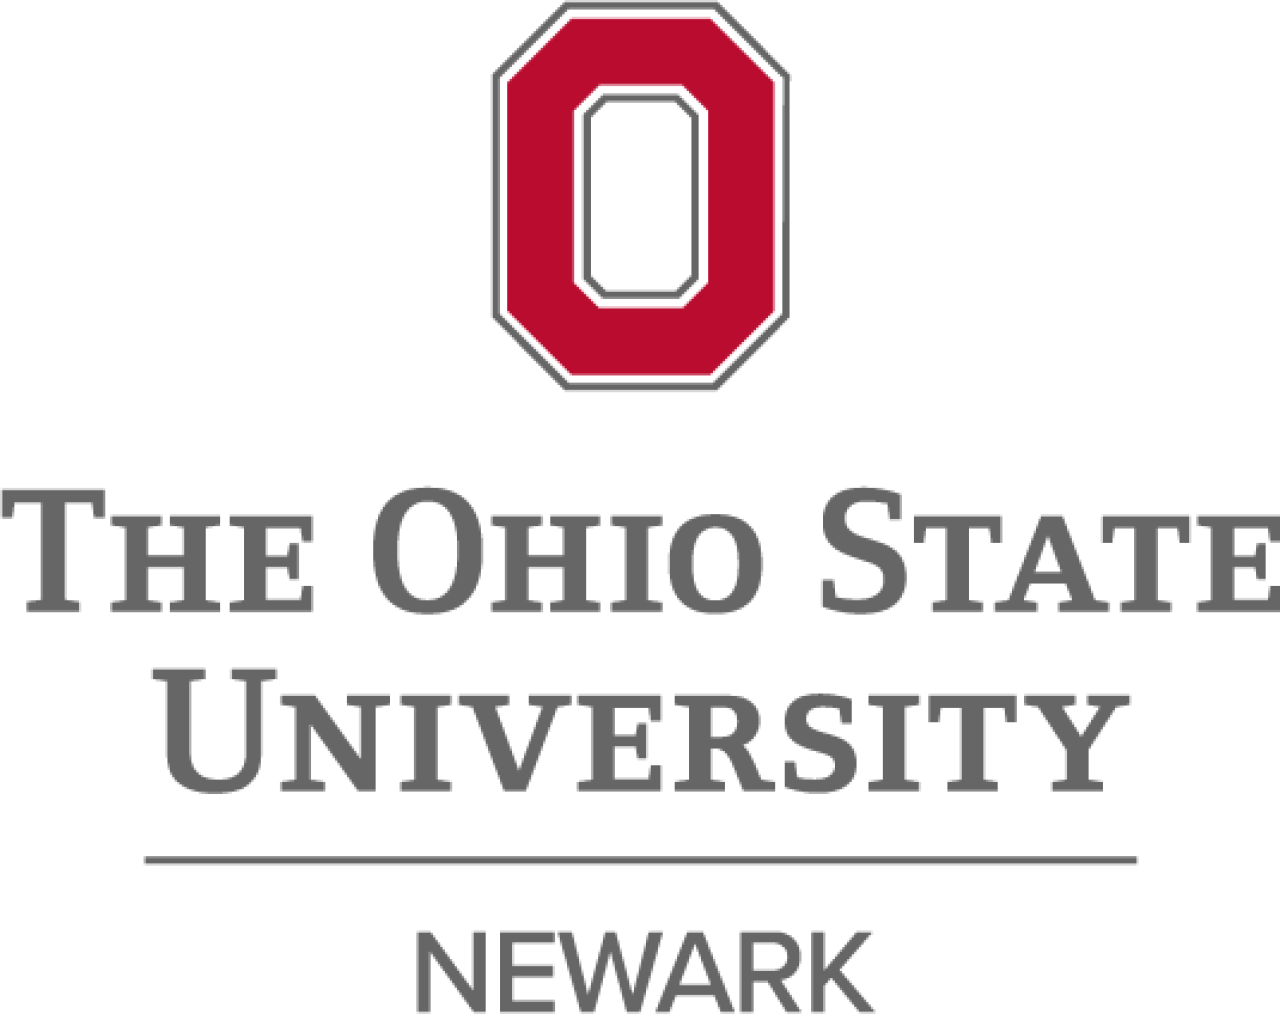 The Ohio State University at Newark logo.